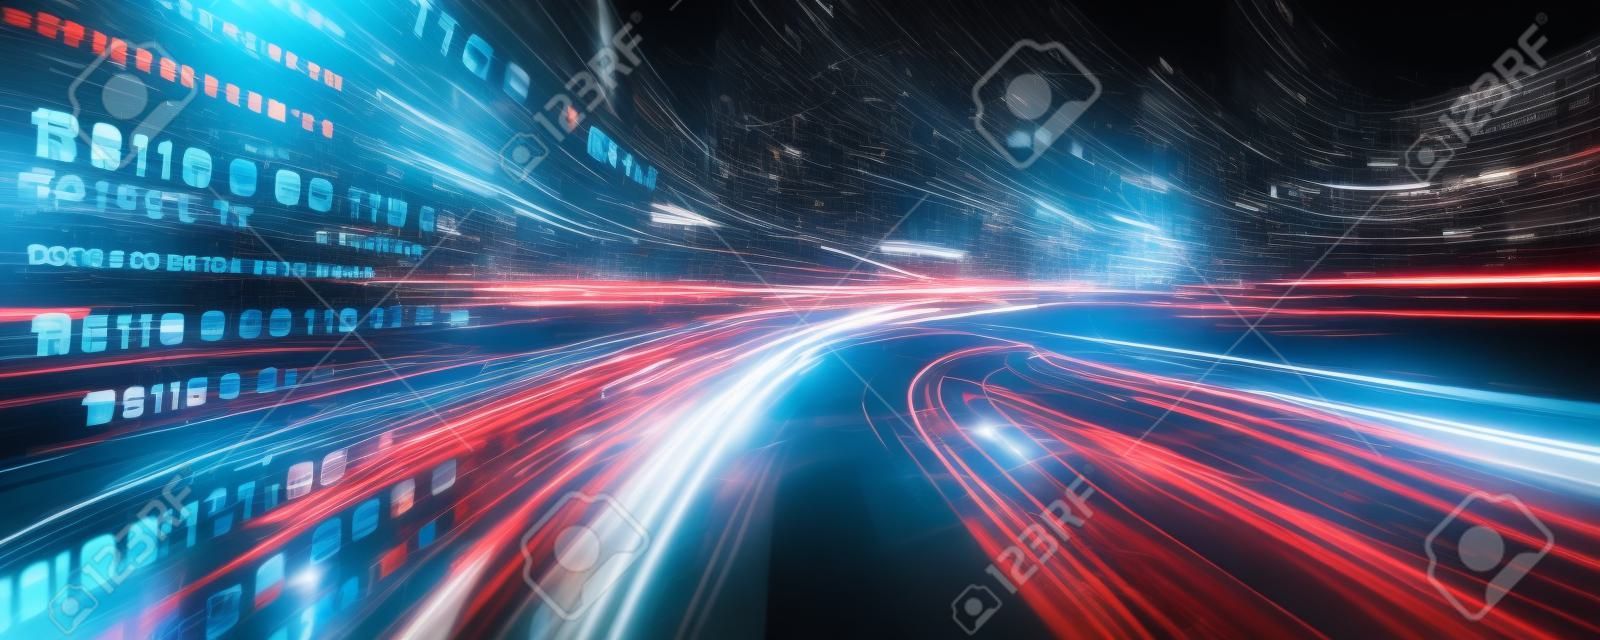 Digitale gegevensstroom op de weg met bewegingsvervaging om visie van snelle snelheid overdracht te creëren. Concept van toekomstige digitale transformatie, ontwrichtende innovatie en wendbare zakelijke methodologie.